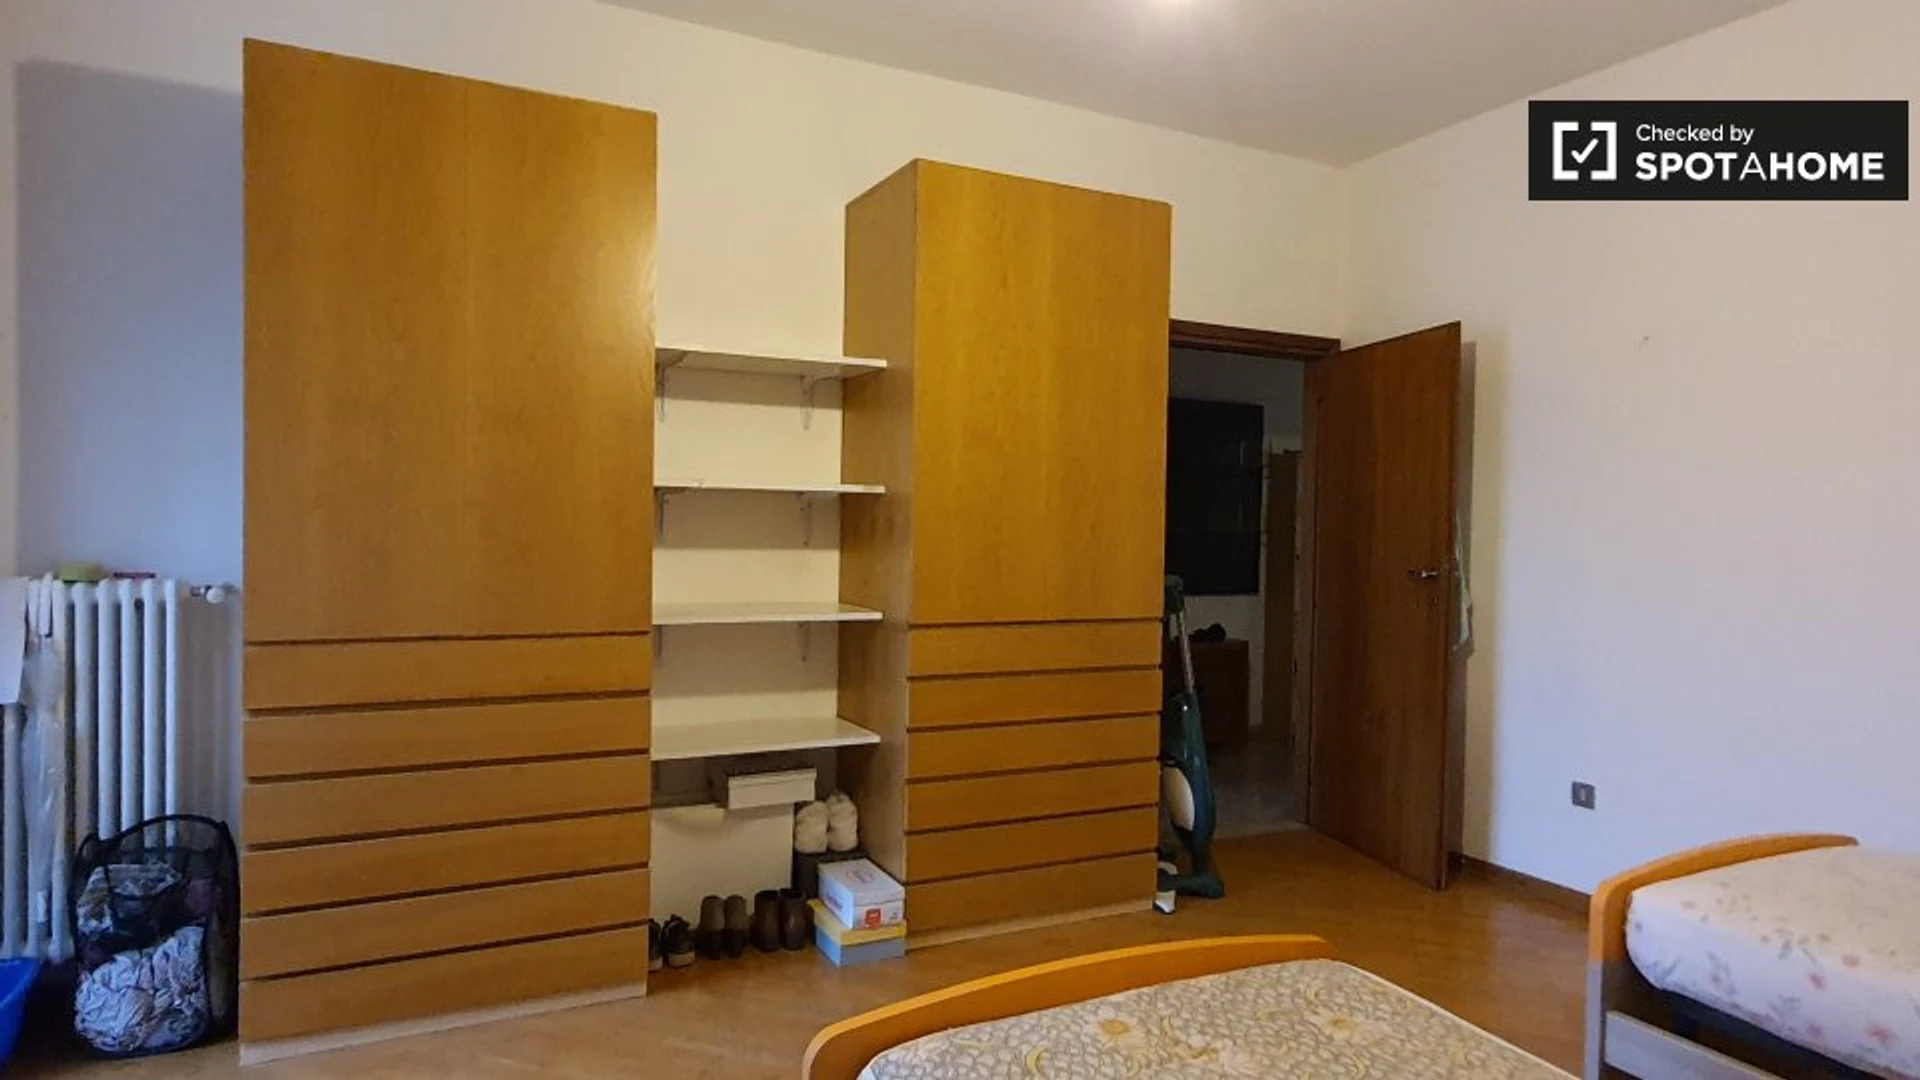 Alquiler de habitaciones por meses en Trento